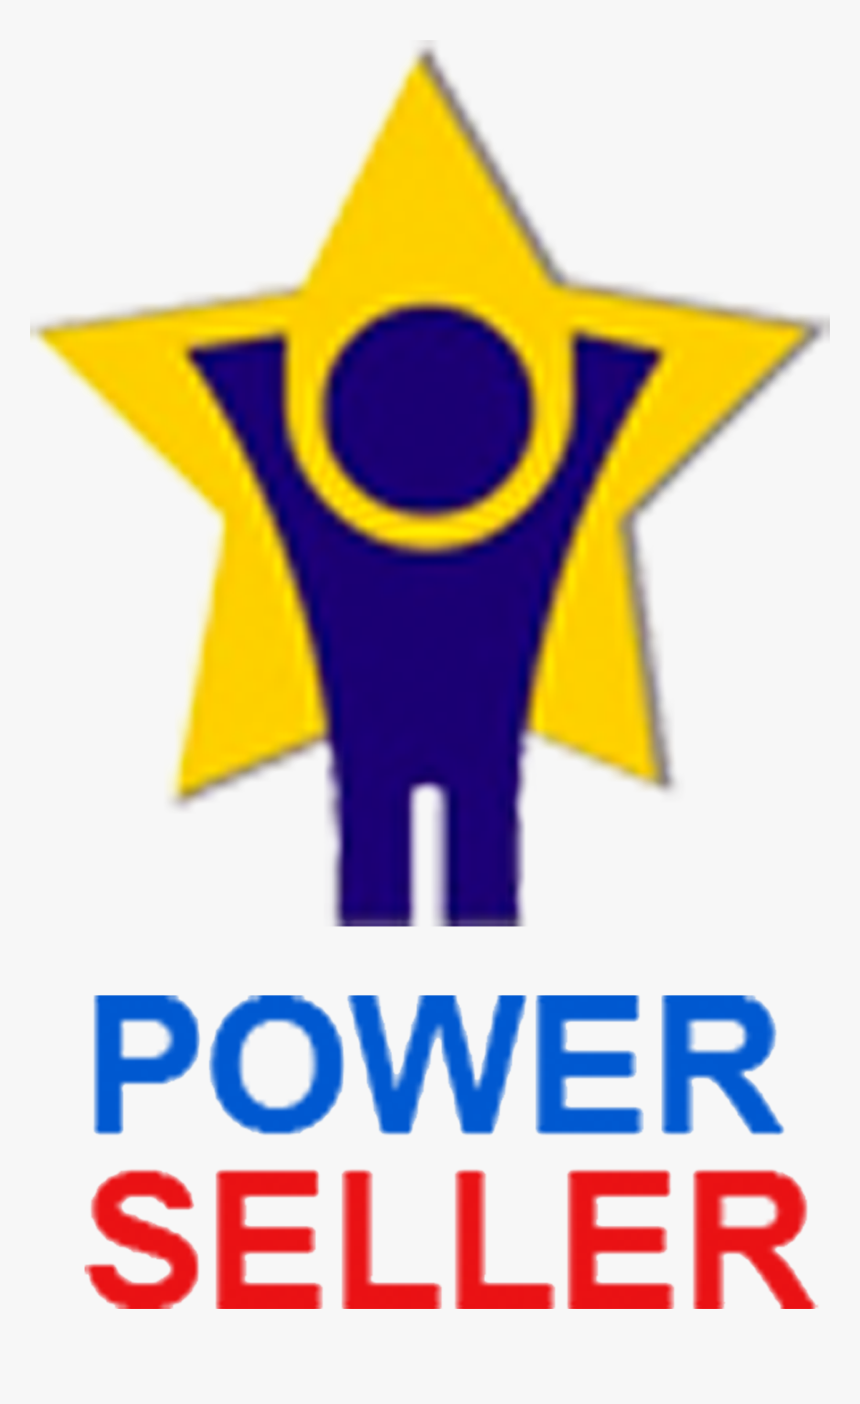 Power Seller Ebay Png - Ebay Power Seller, Transparent Png, Free Download